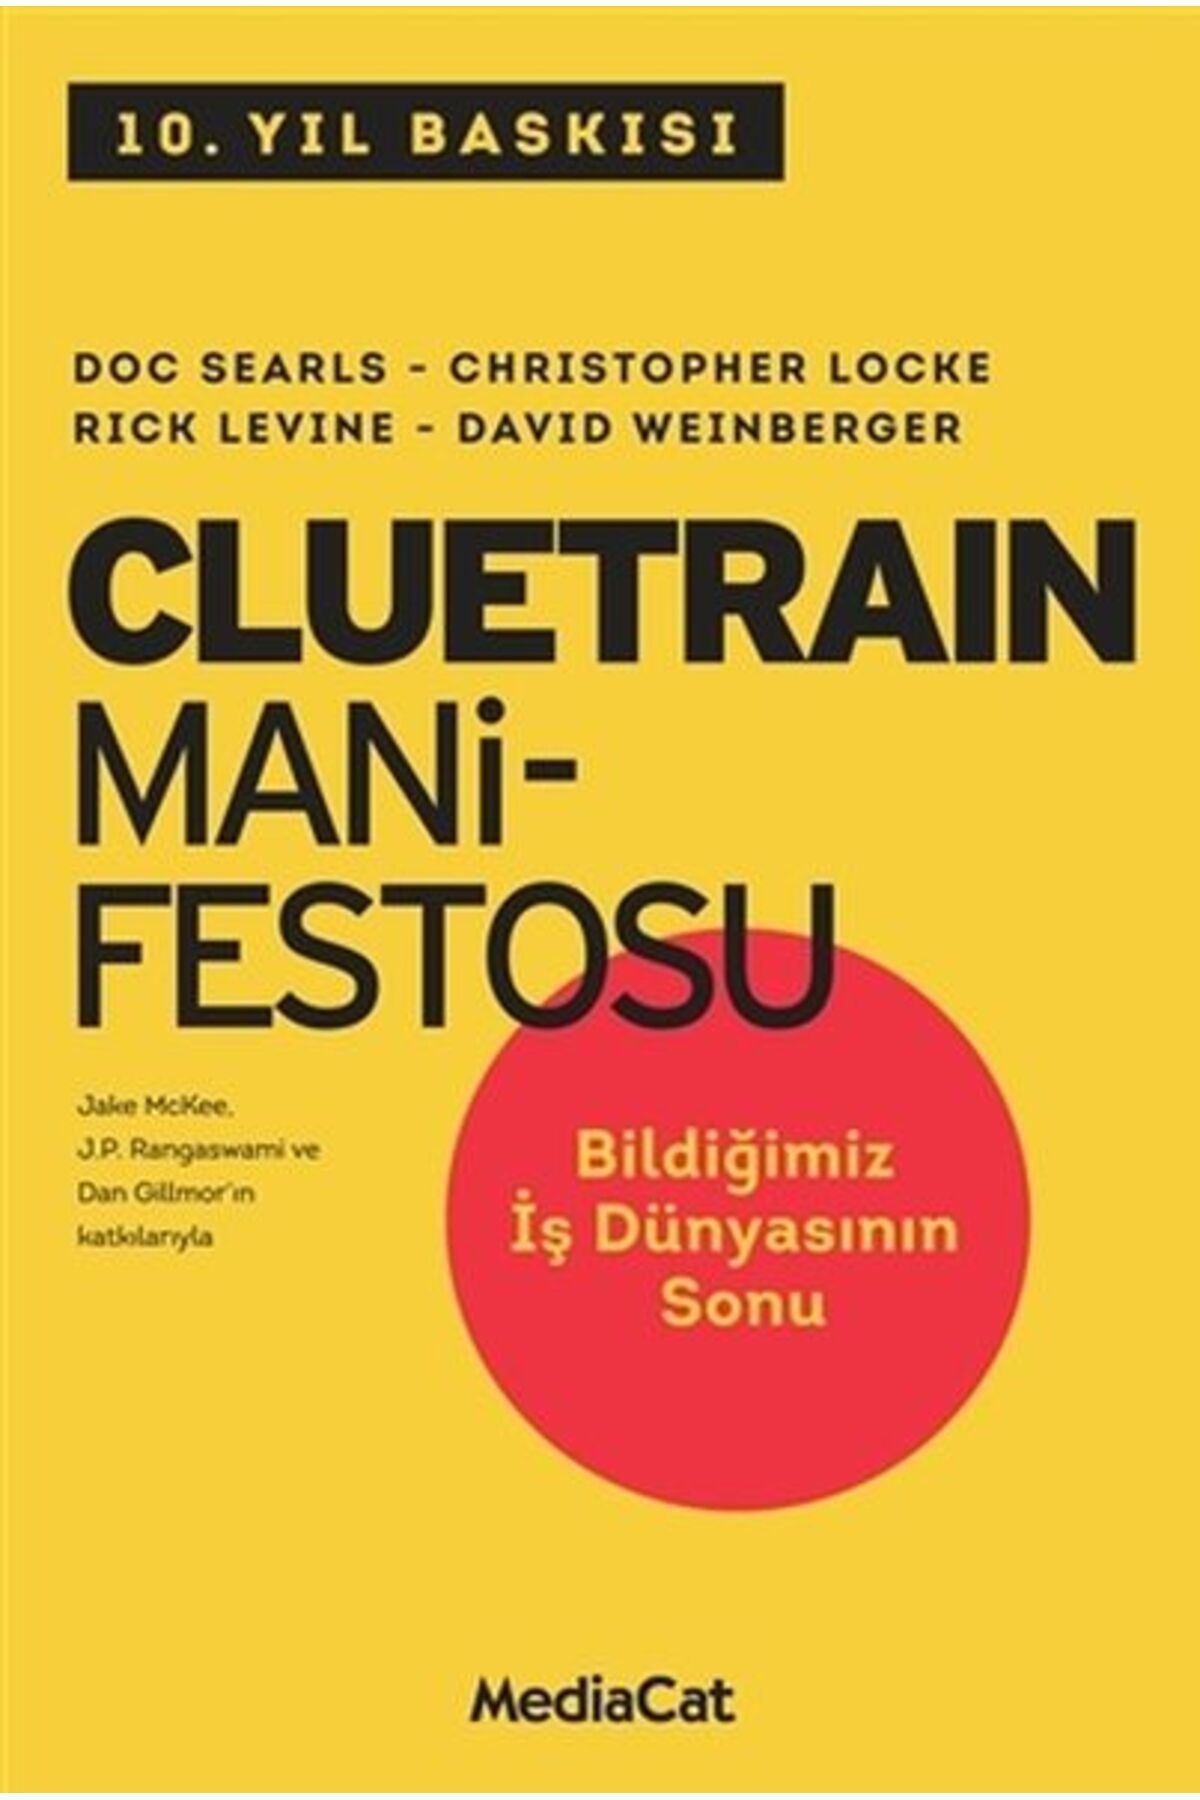 MediaCat Kitapları Cluetrain Manifestosu Mediacat Kitapları kitap